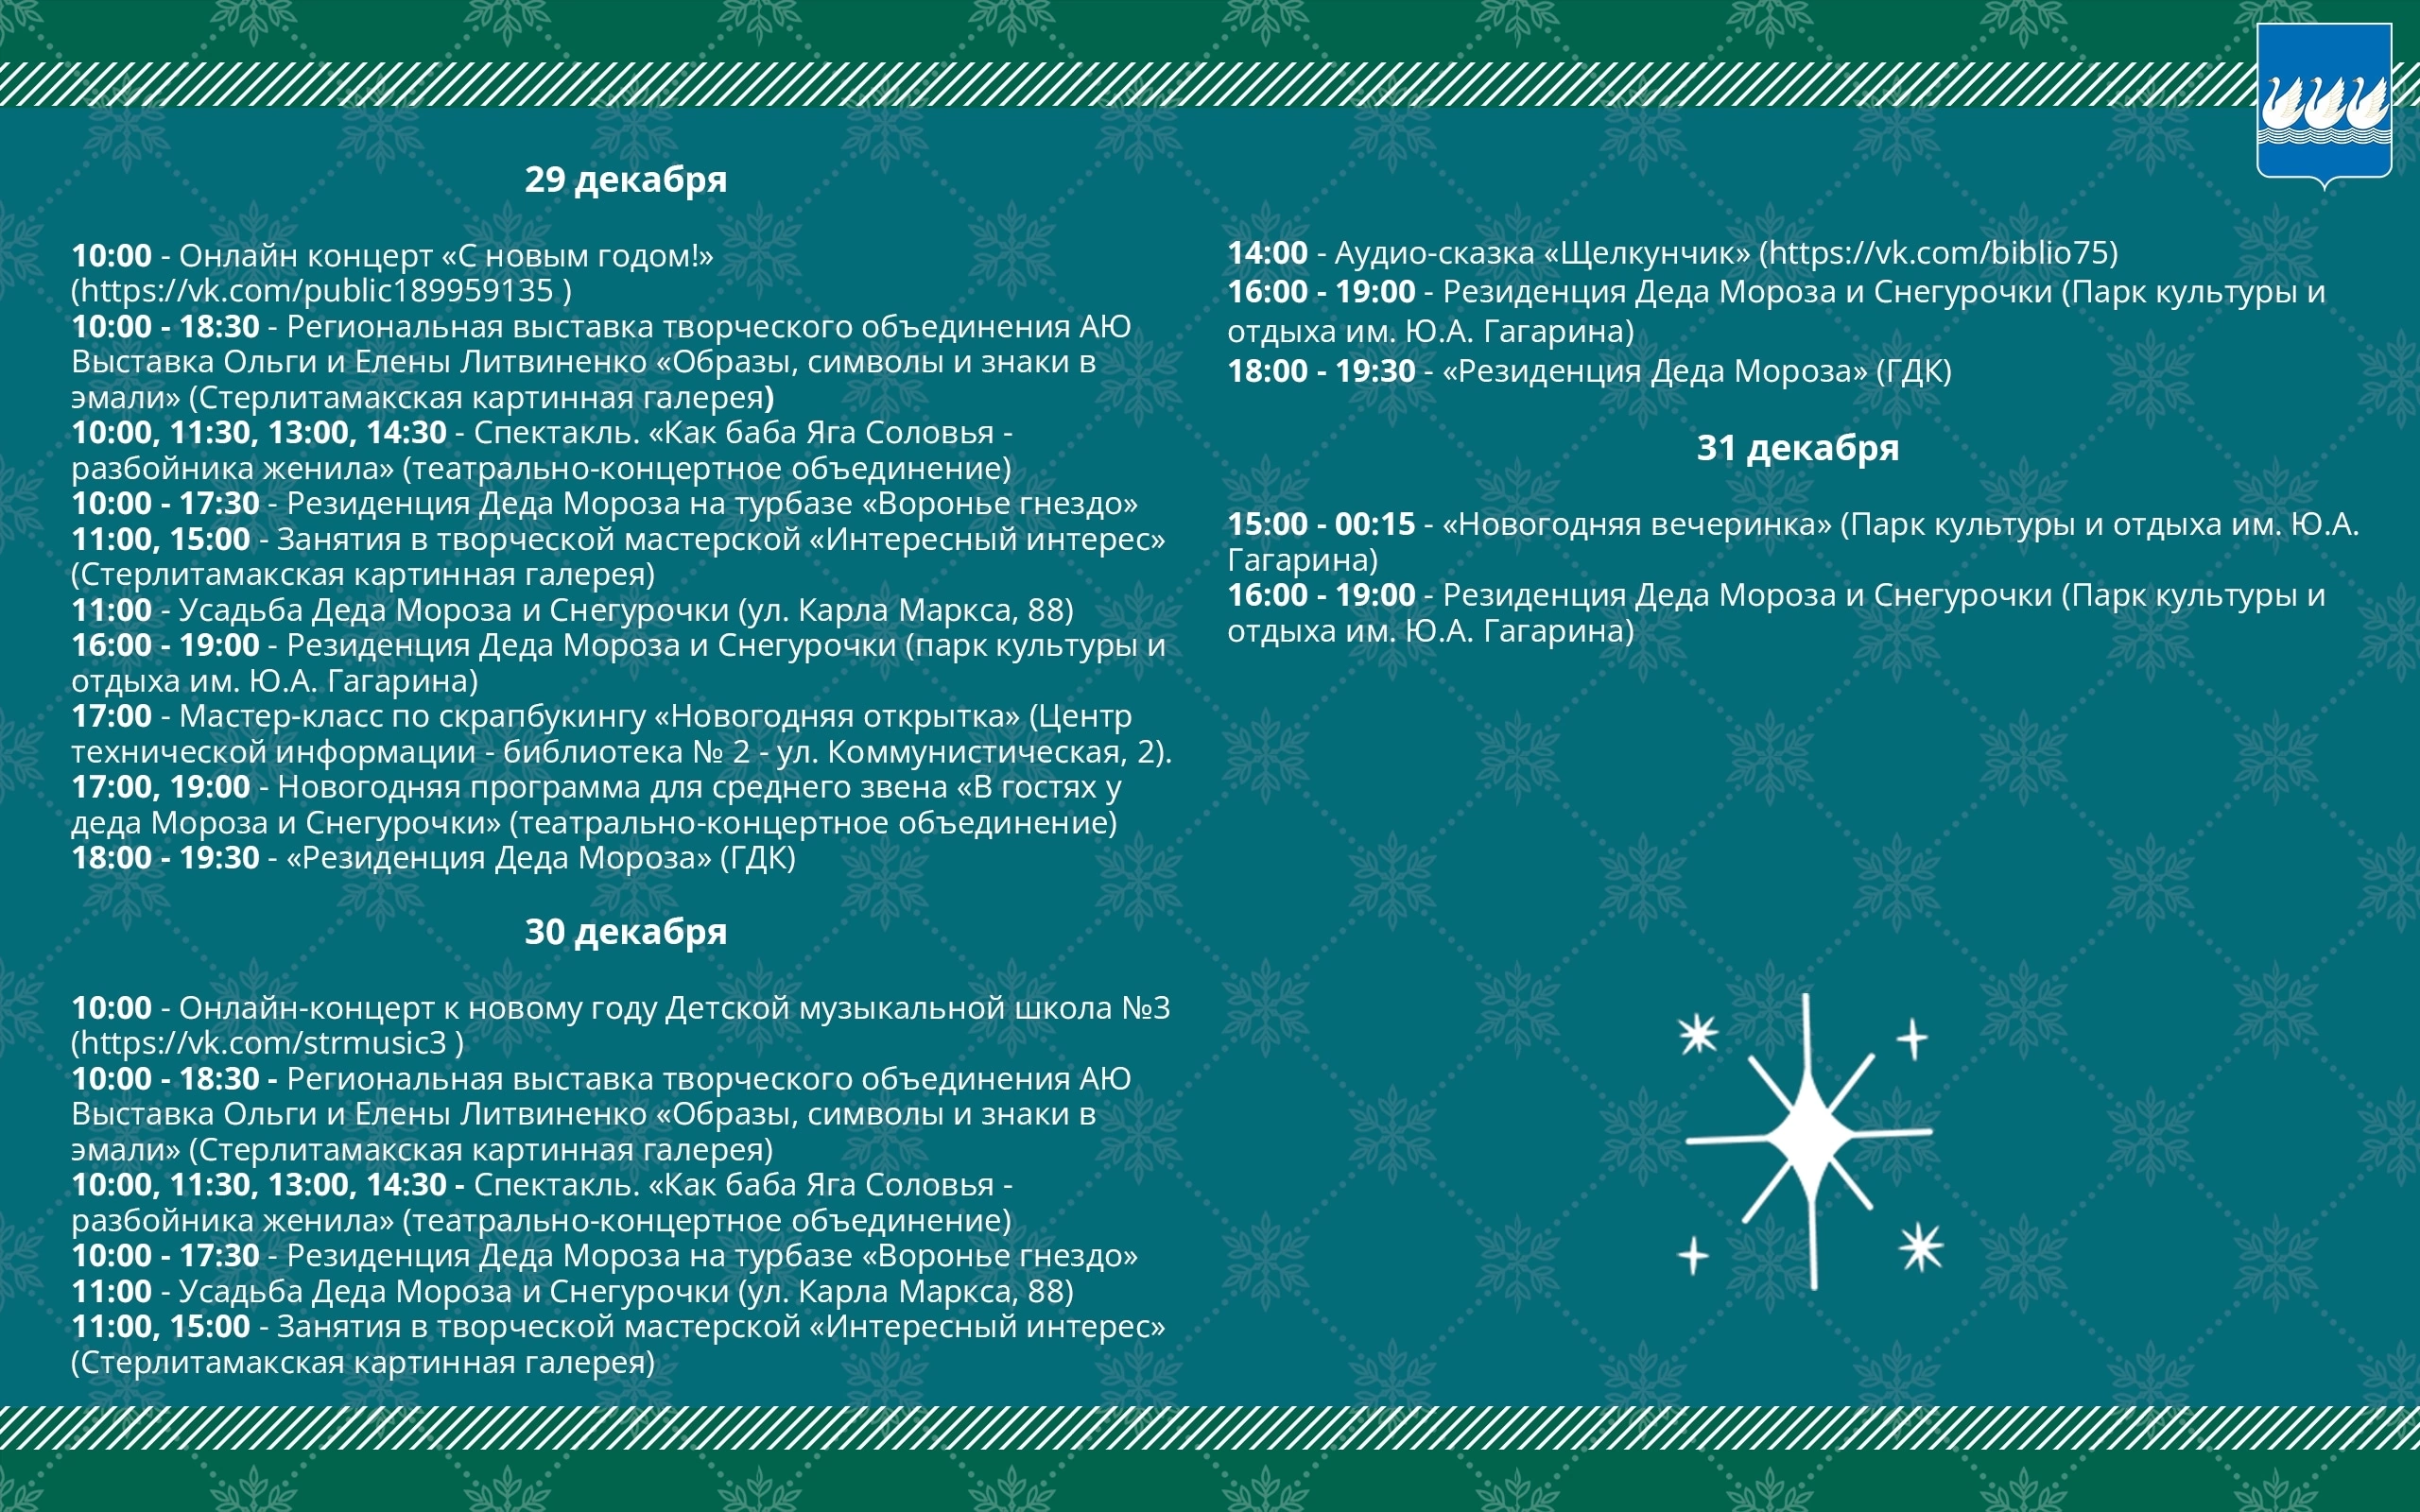 В Стерлитамаке запланирован ряд мероприятий, посвящённых Новому году